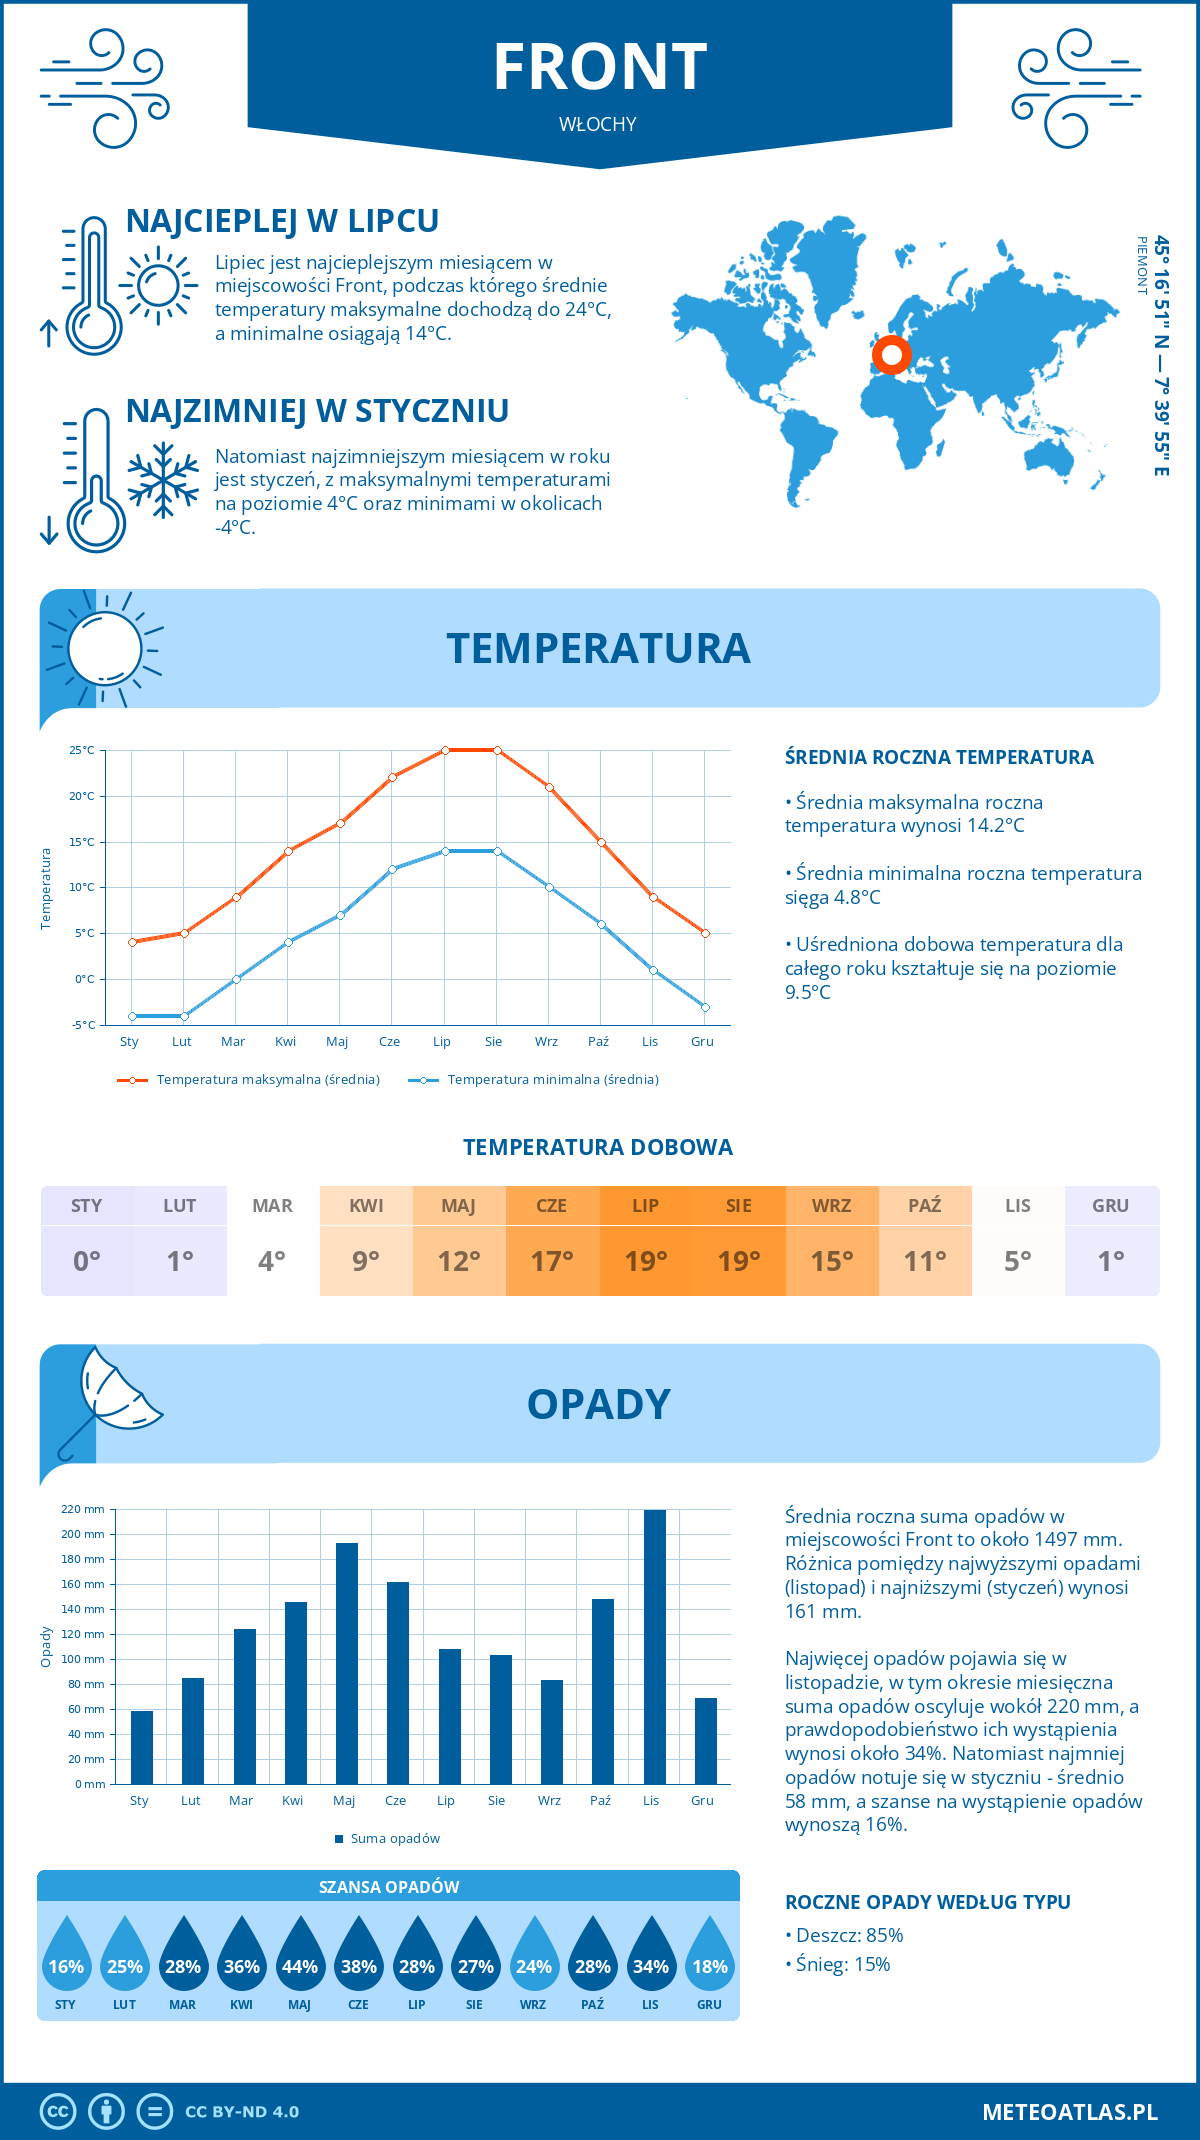 Pogoda Front (Włochy). Temperatura oraz opady.